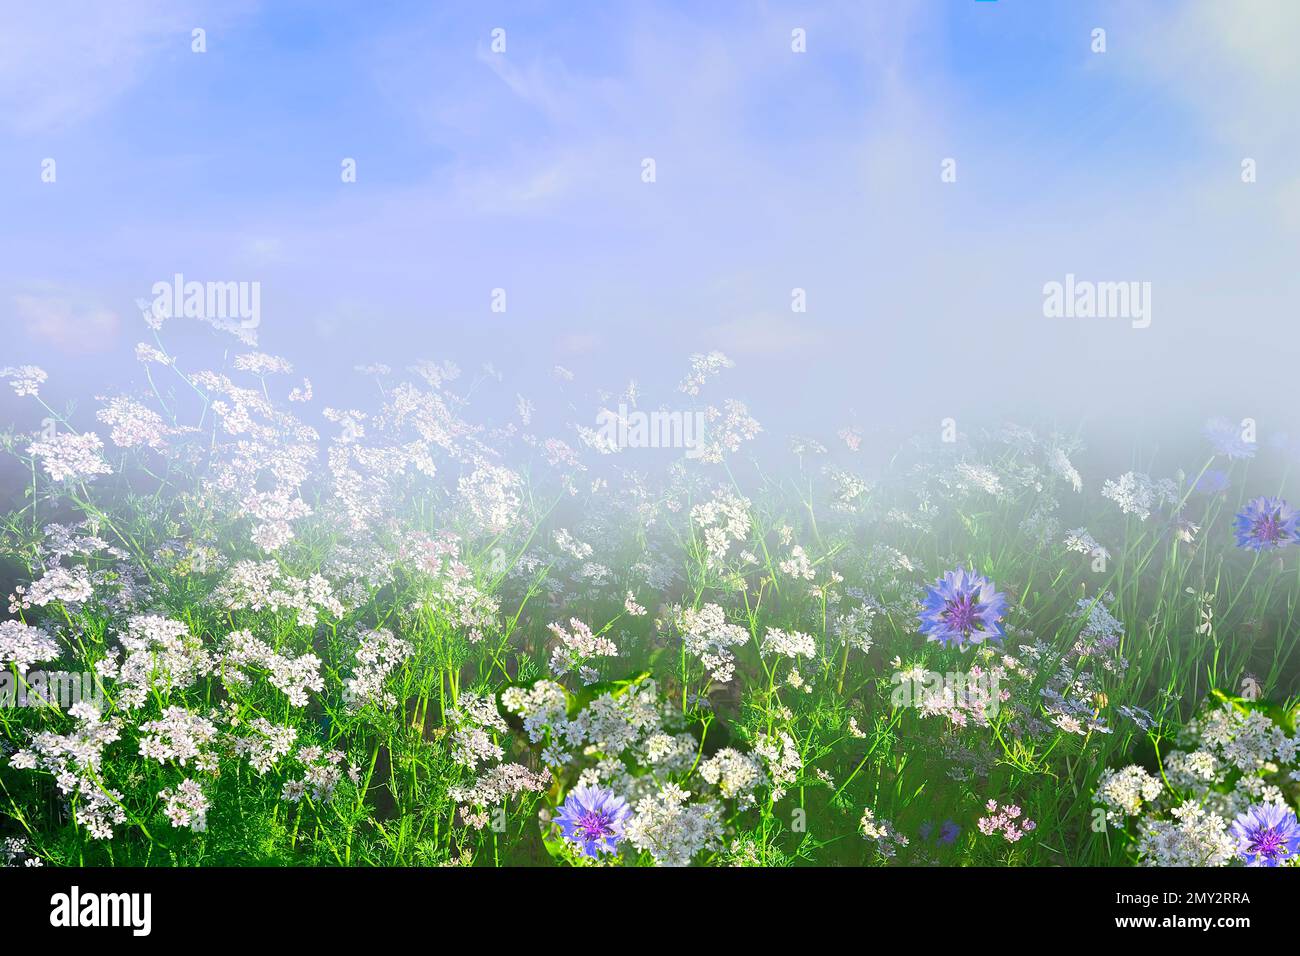 Im Sommer verwischte Landschaft - Nebel erhebt sich über blühenden Wiesen mit winzigen weißen Blumen und blauen Maisblumen. Frische am Morgen und herrliche Schönheit von s. Stockfoto